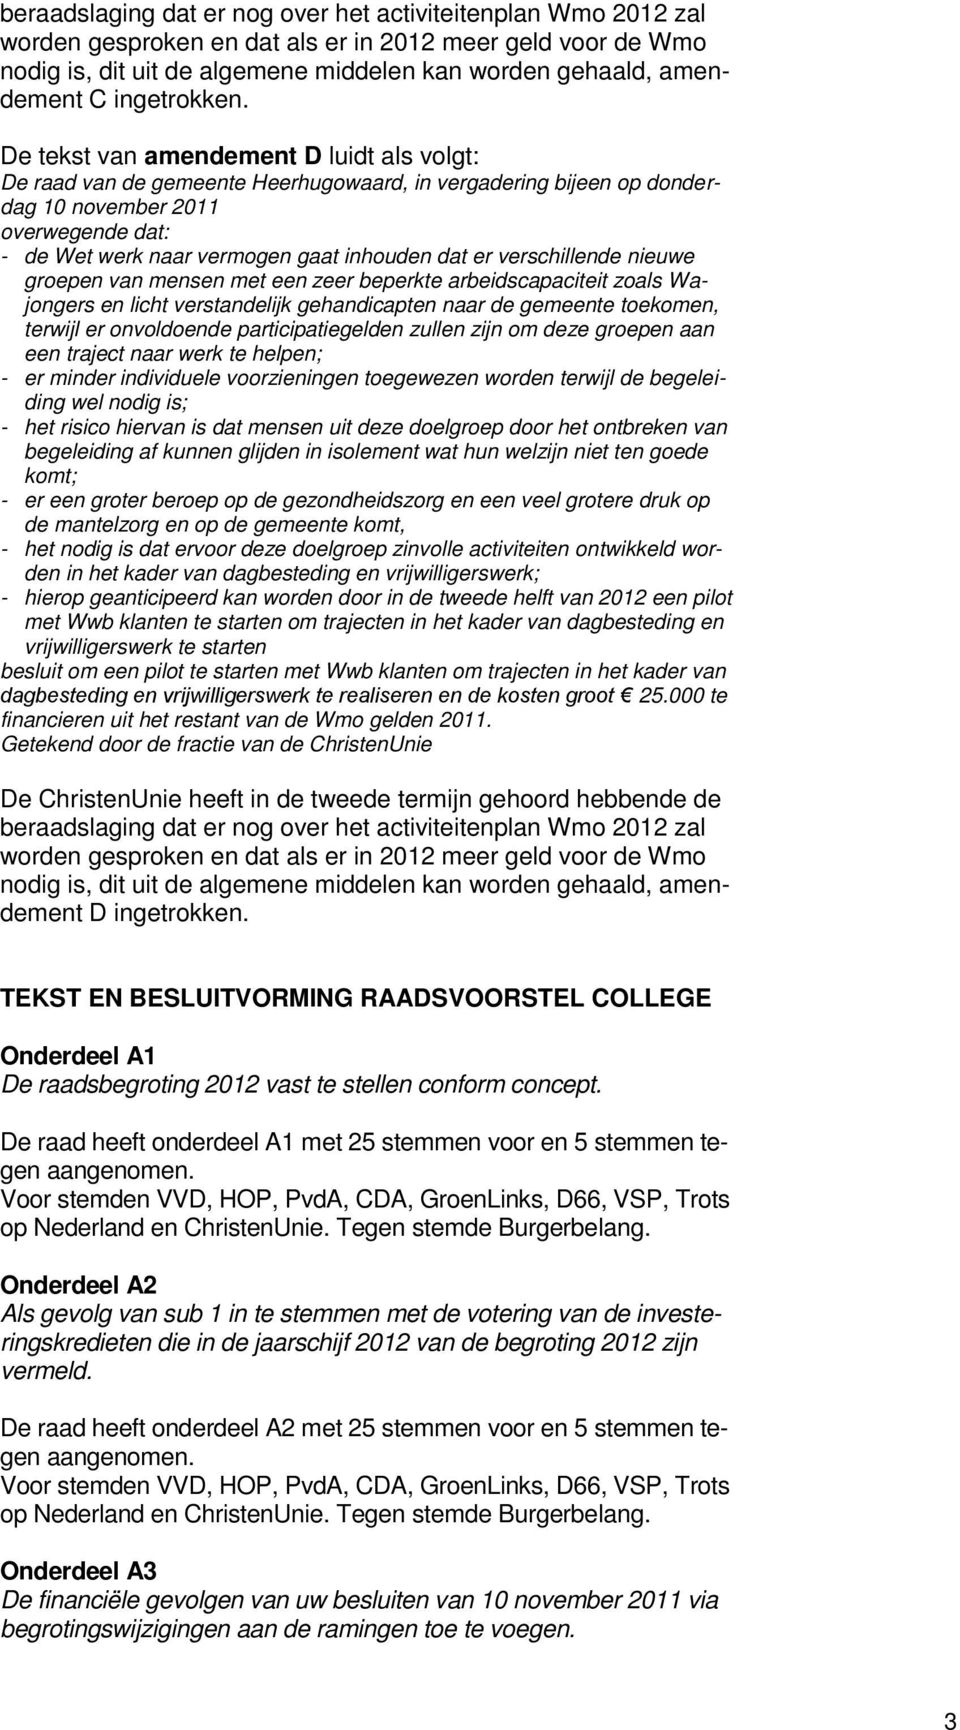 De tekst van amendement D luidt als volgt: De raad van de gemeente Heerhugowaard, in vergadering bijeen op donderdag 10 november 2011 - de Wet werk naar vermogen gaat inhouden dat er verschillende